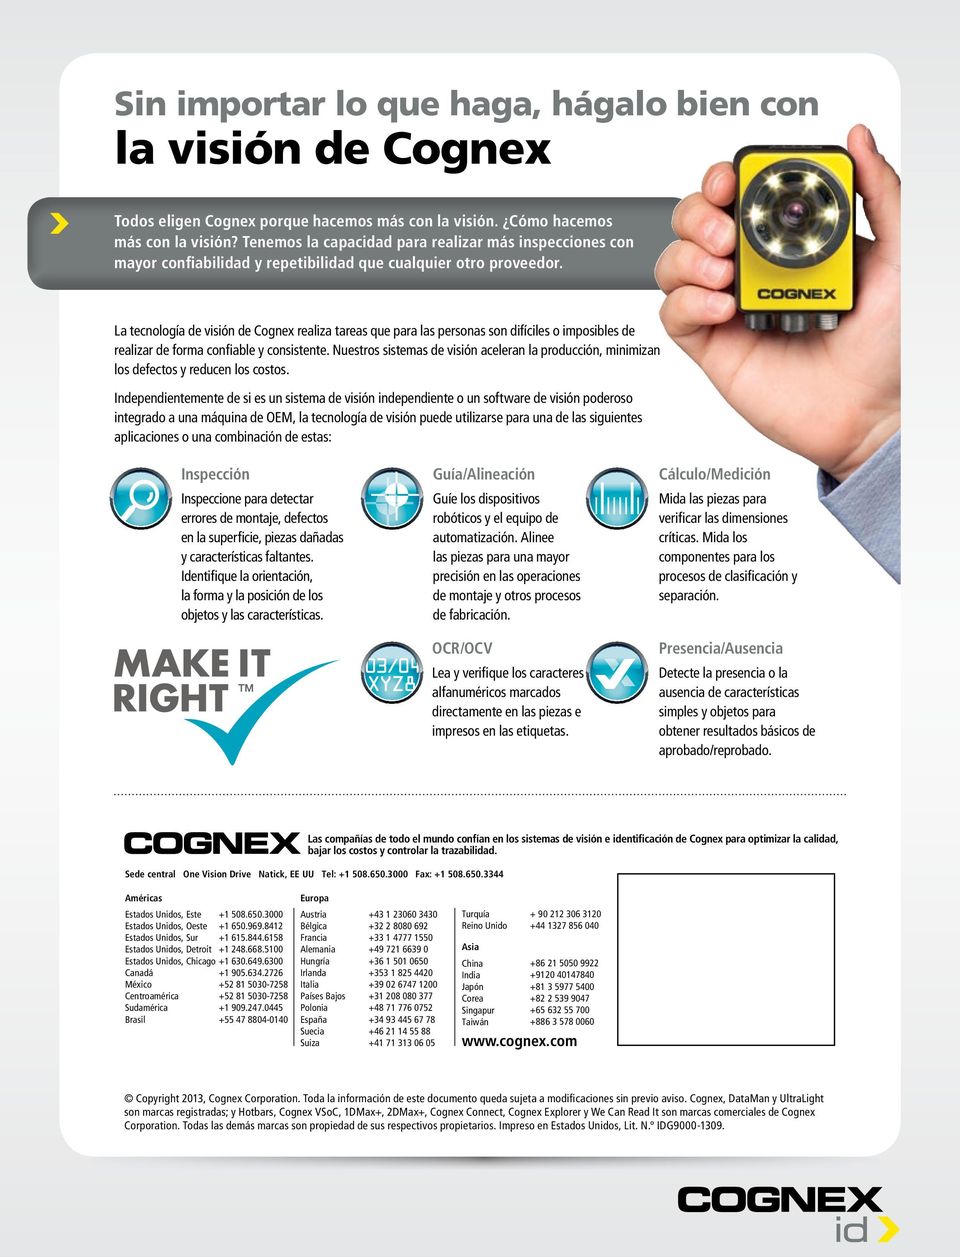 La tecnología de visión de Cognex realiza tareas que para las personas son difíciles o imposibles de realizar de forma confiable y consistente.